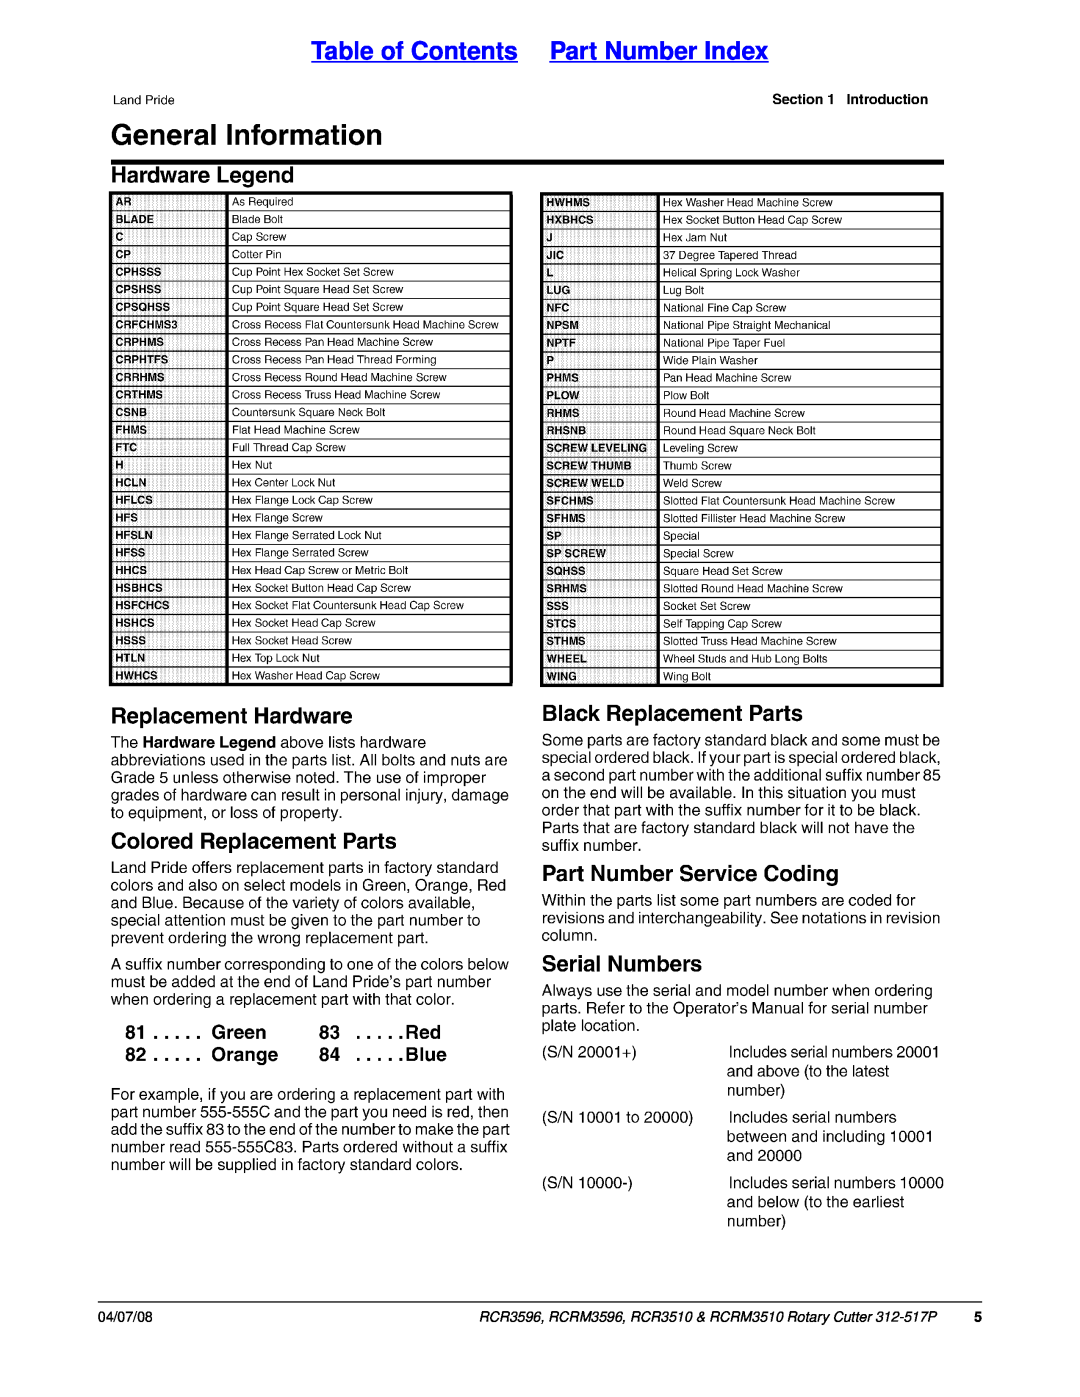 Land Pride RCRM3510, RCR3510, RCRM3596, RCR3596 manual Table of Contents Part Number Index, 04/07/08 